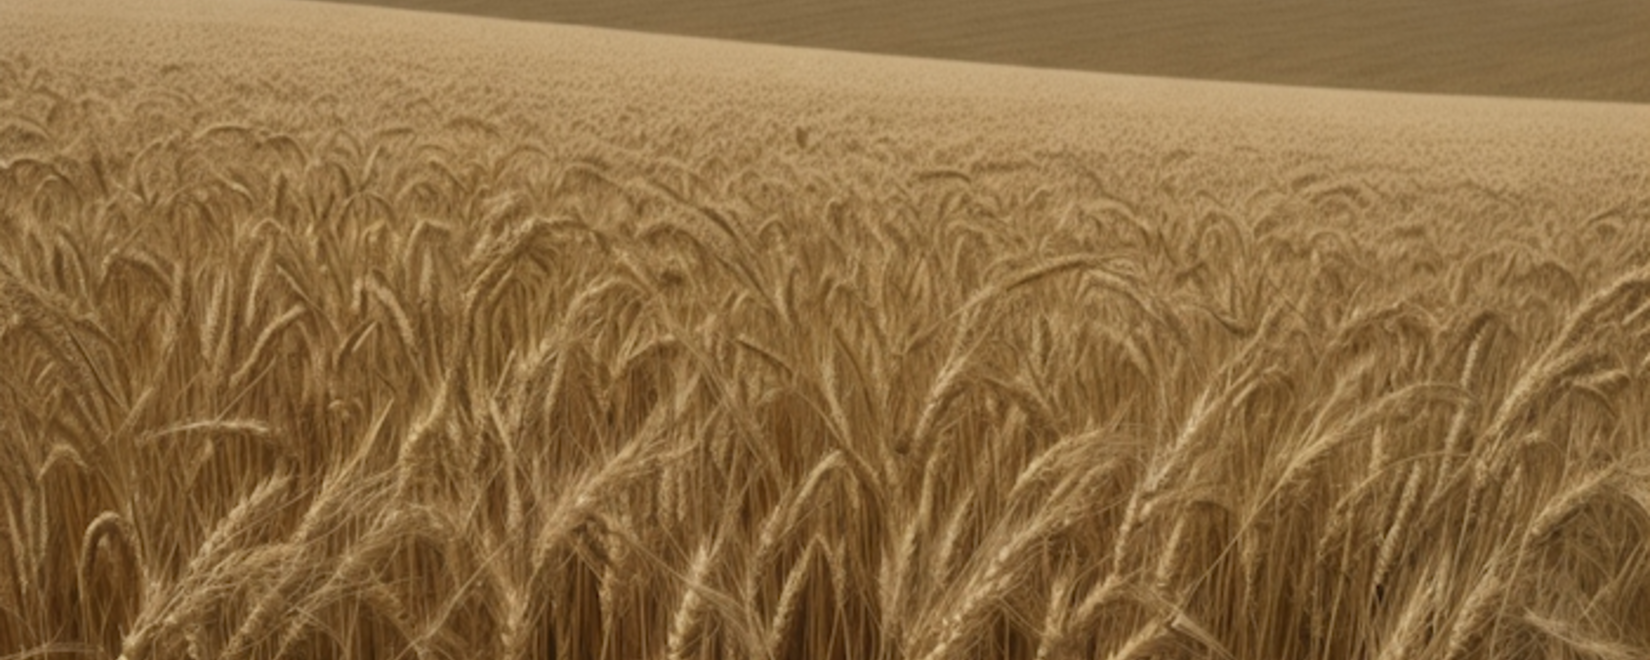 Снижение пошлины на экспорт пшеницы из РФ на 5,3% с 17 января